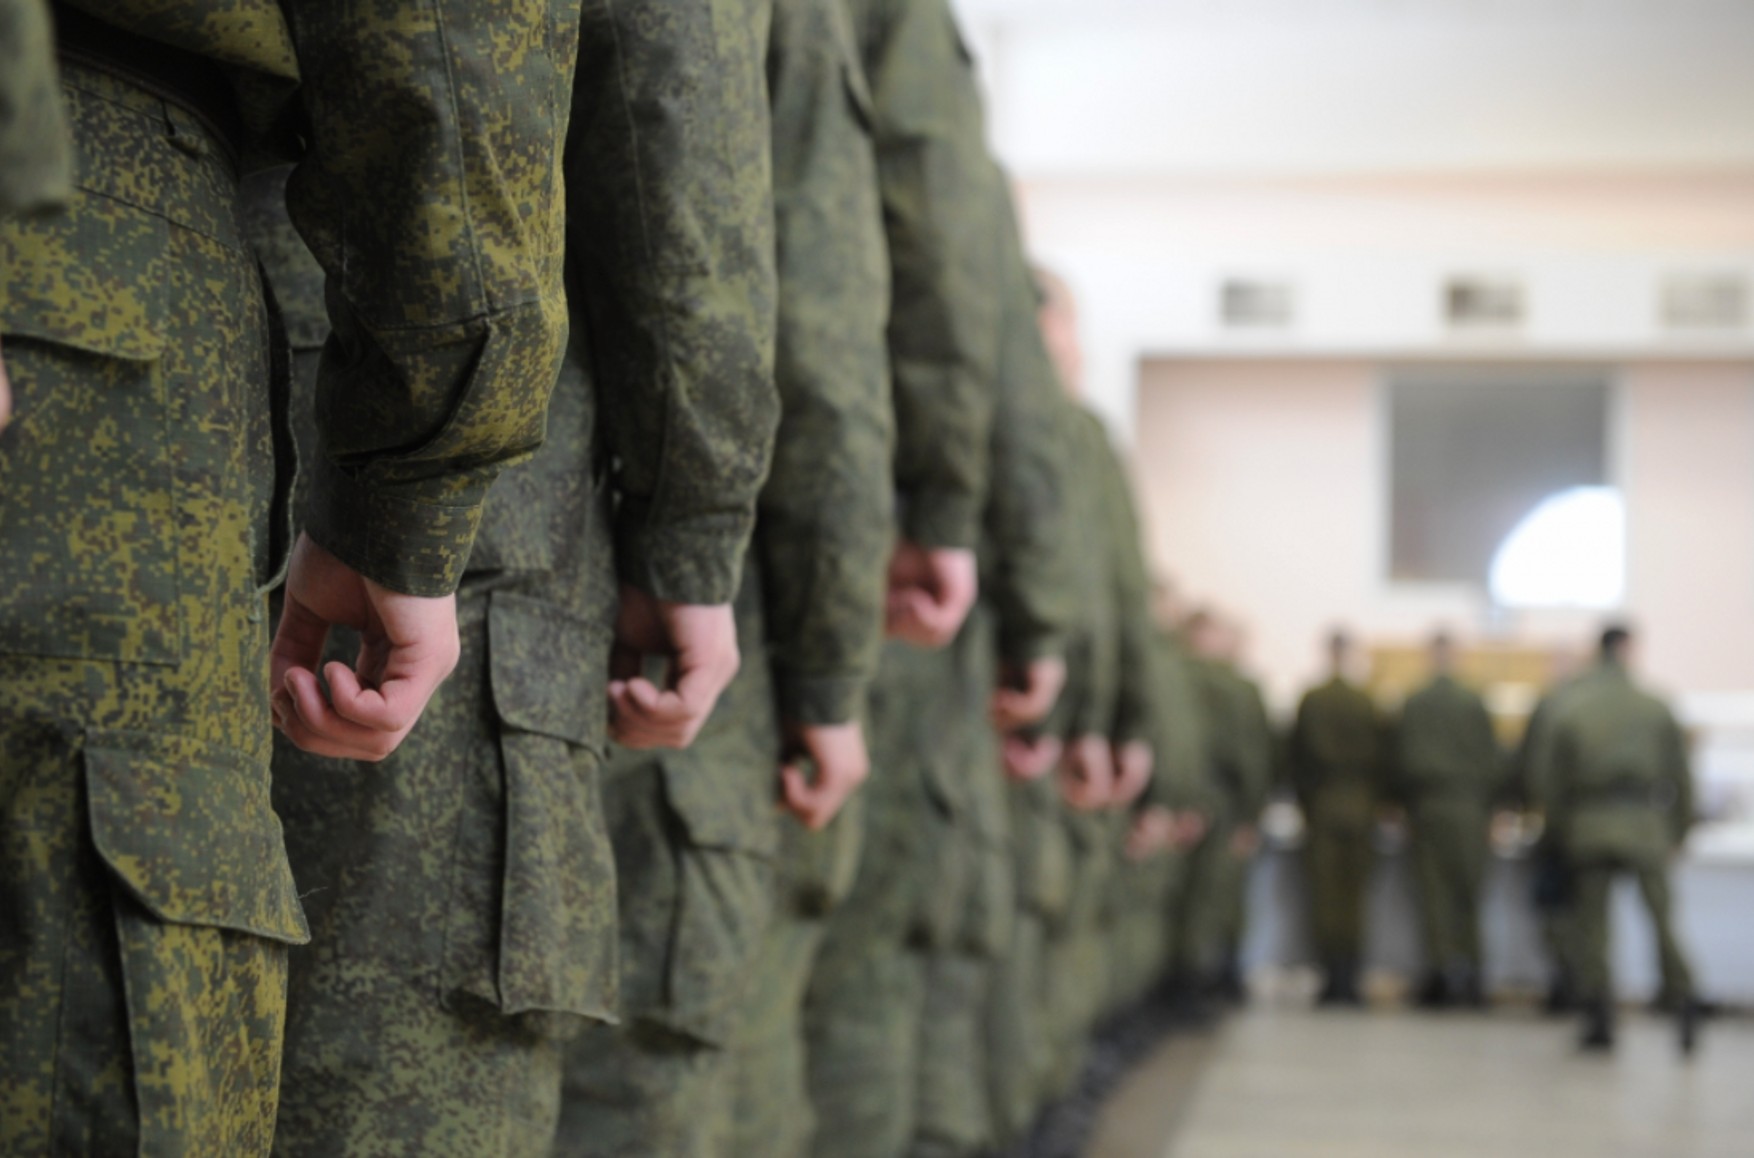 Військовий комісаріат Ленінградської області привітав дівчат з 8 березня, в якості подарунка пообіцявши забрати їх колишніх в армію